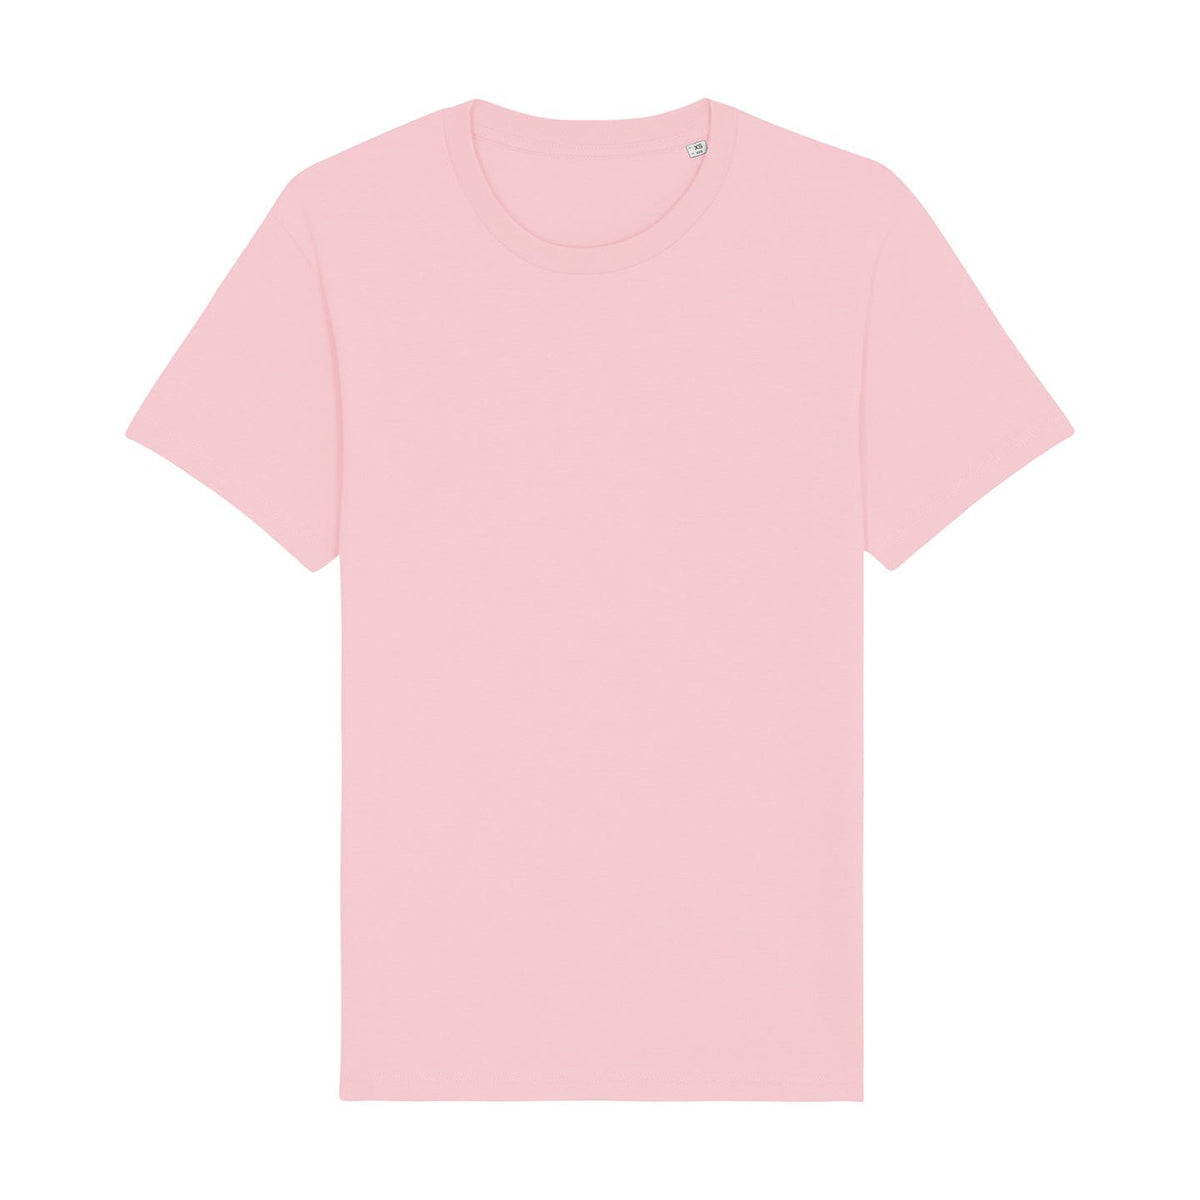 Stanley/Stella Rocker The Essential Unisex T-Shirt